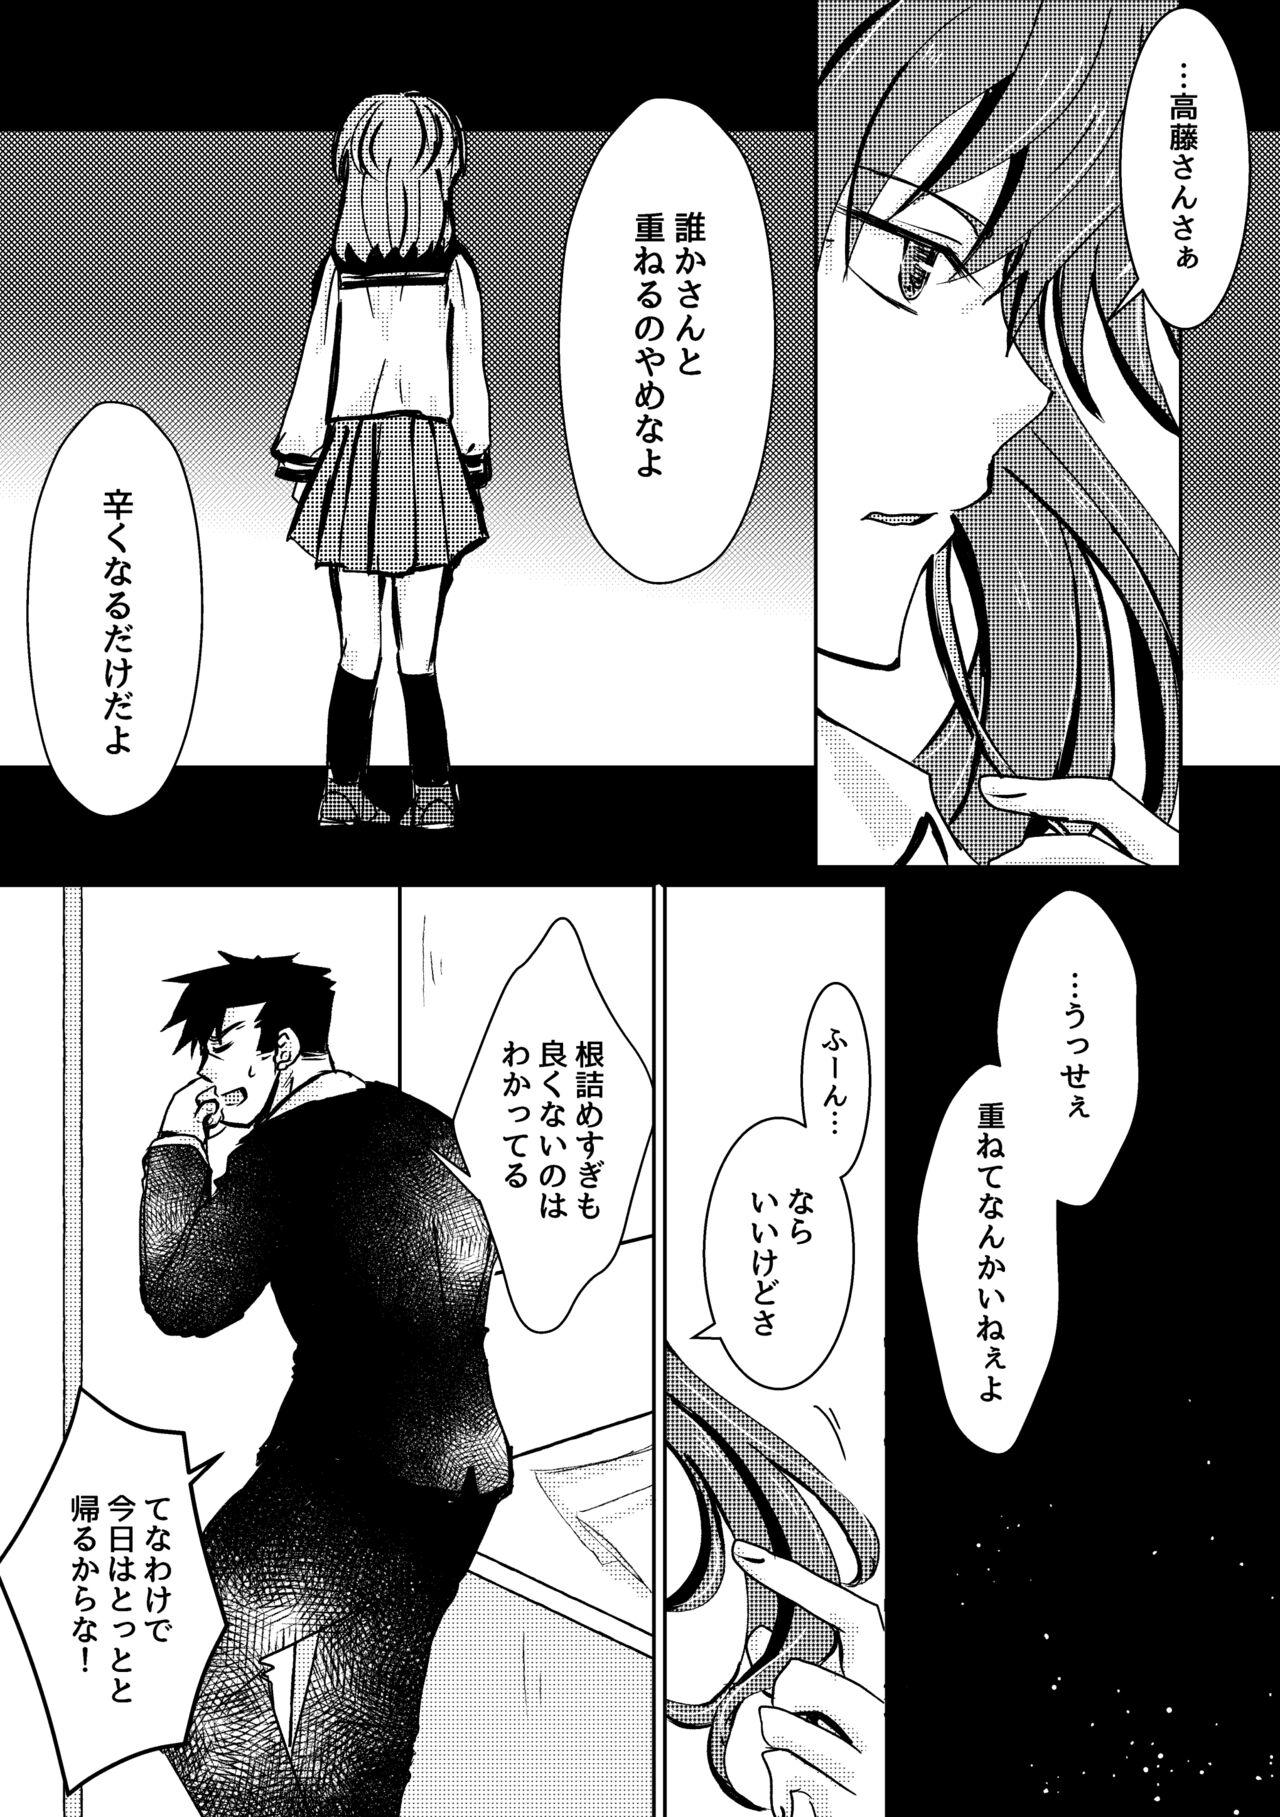 Mature Kaju Yoru no Hanaka Episode 2 Bj - Page 5